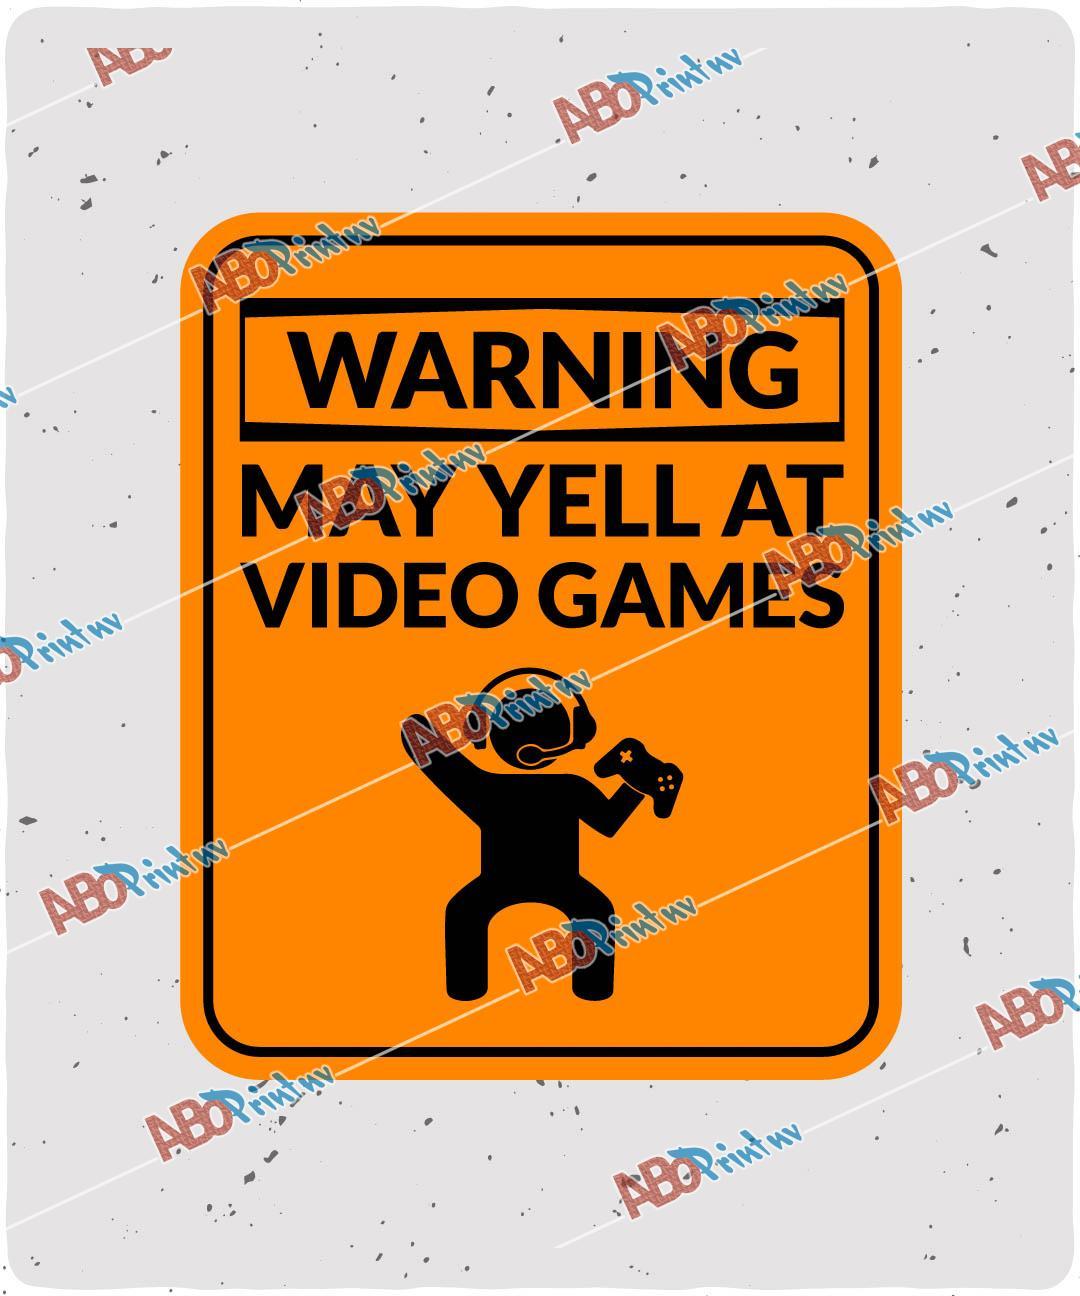 Warning May Yell At Video Games.jpg